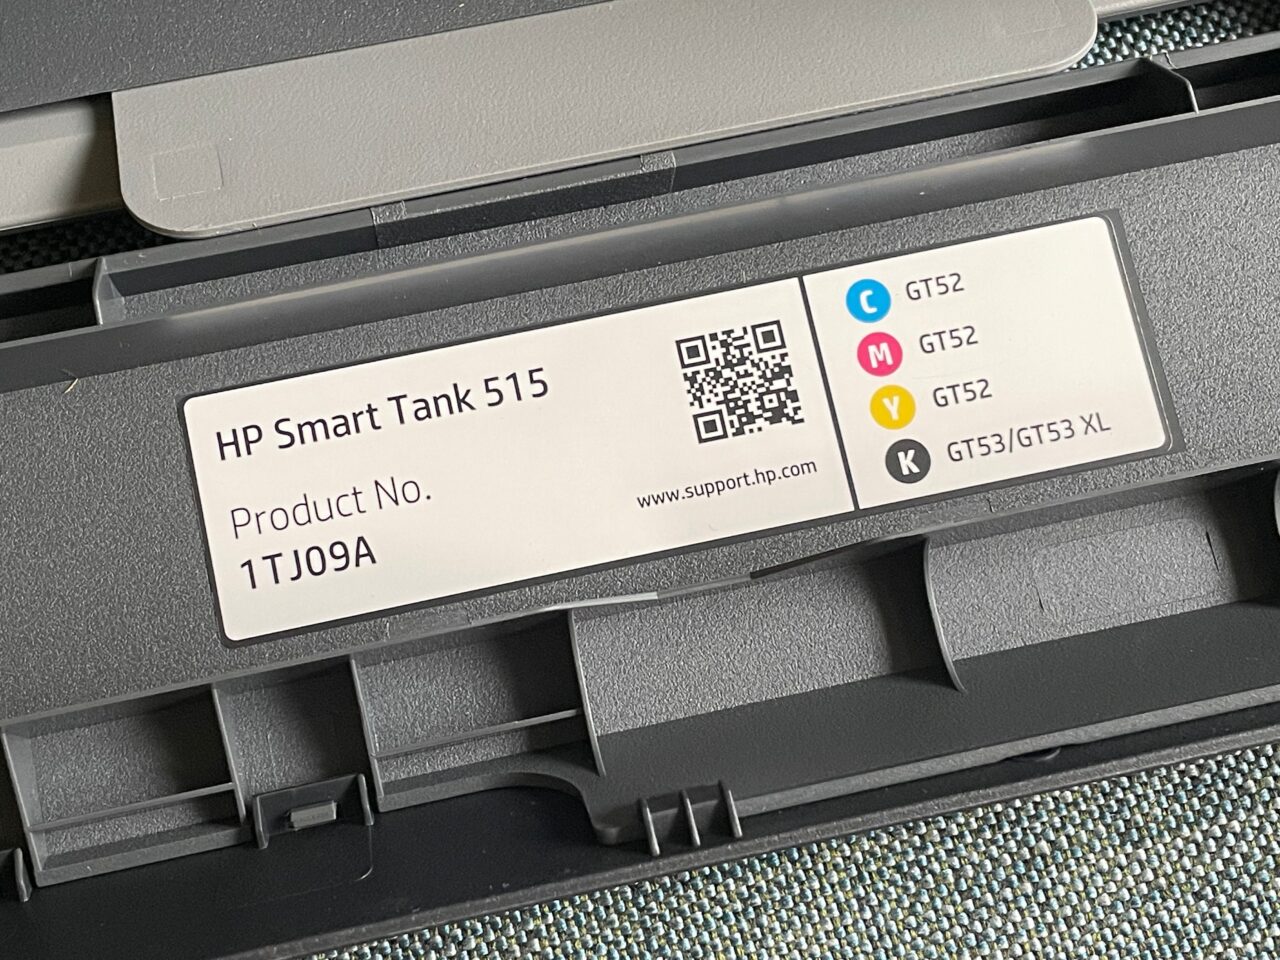 Etykieta drukarki HP Smart Tank 515 z kodem QR, numerem produktu 1TJ09A oraz oznaczeniami kolorów wkładów atramentowych: cyan, magenta, żółty i czarny (GT52, GT53/GT53 XL).